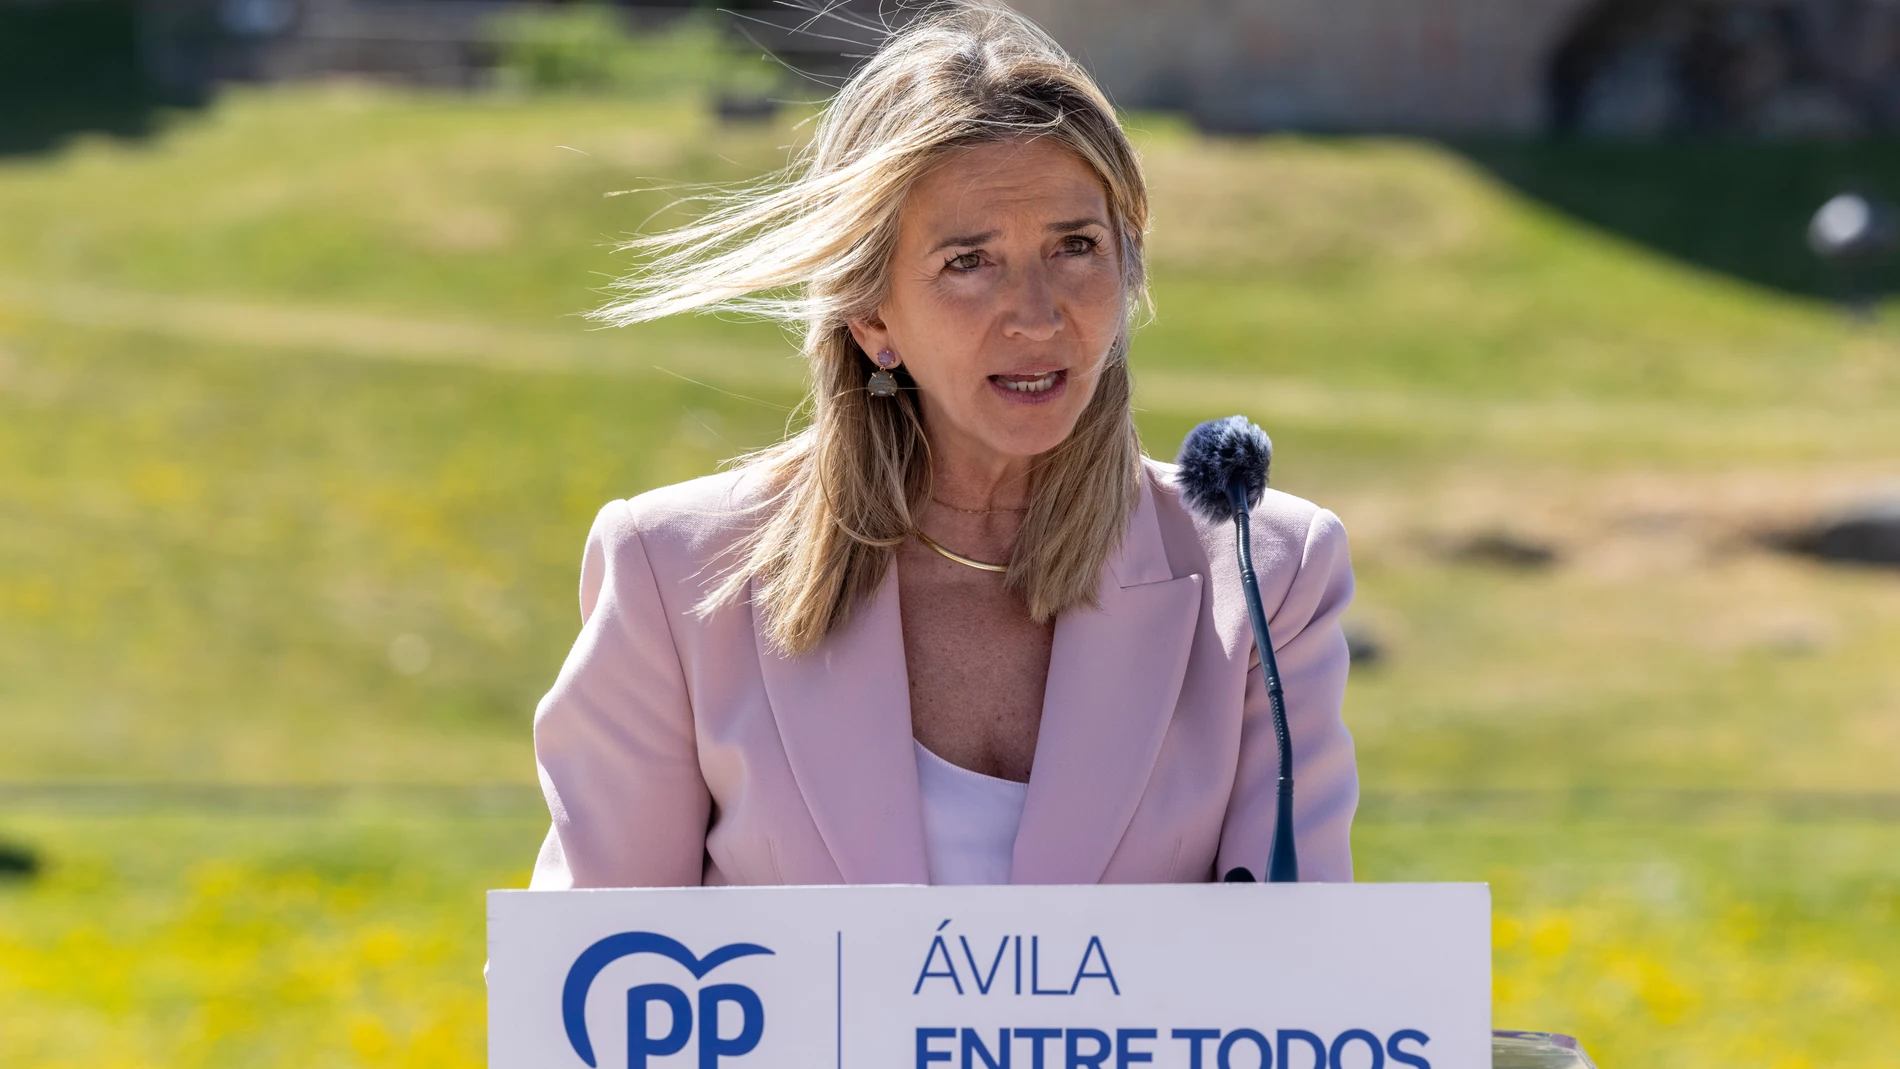 La candidata del PP a la alcaldía de Ávila, Alicia García